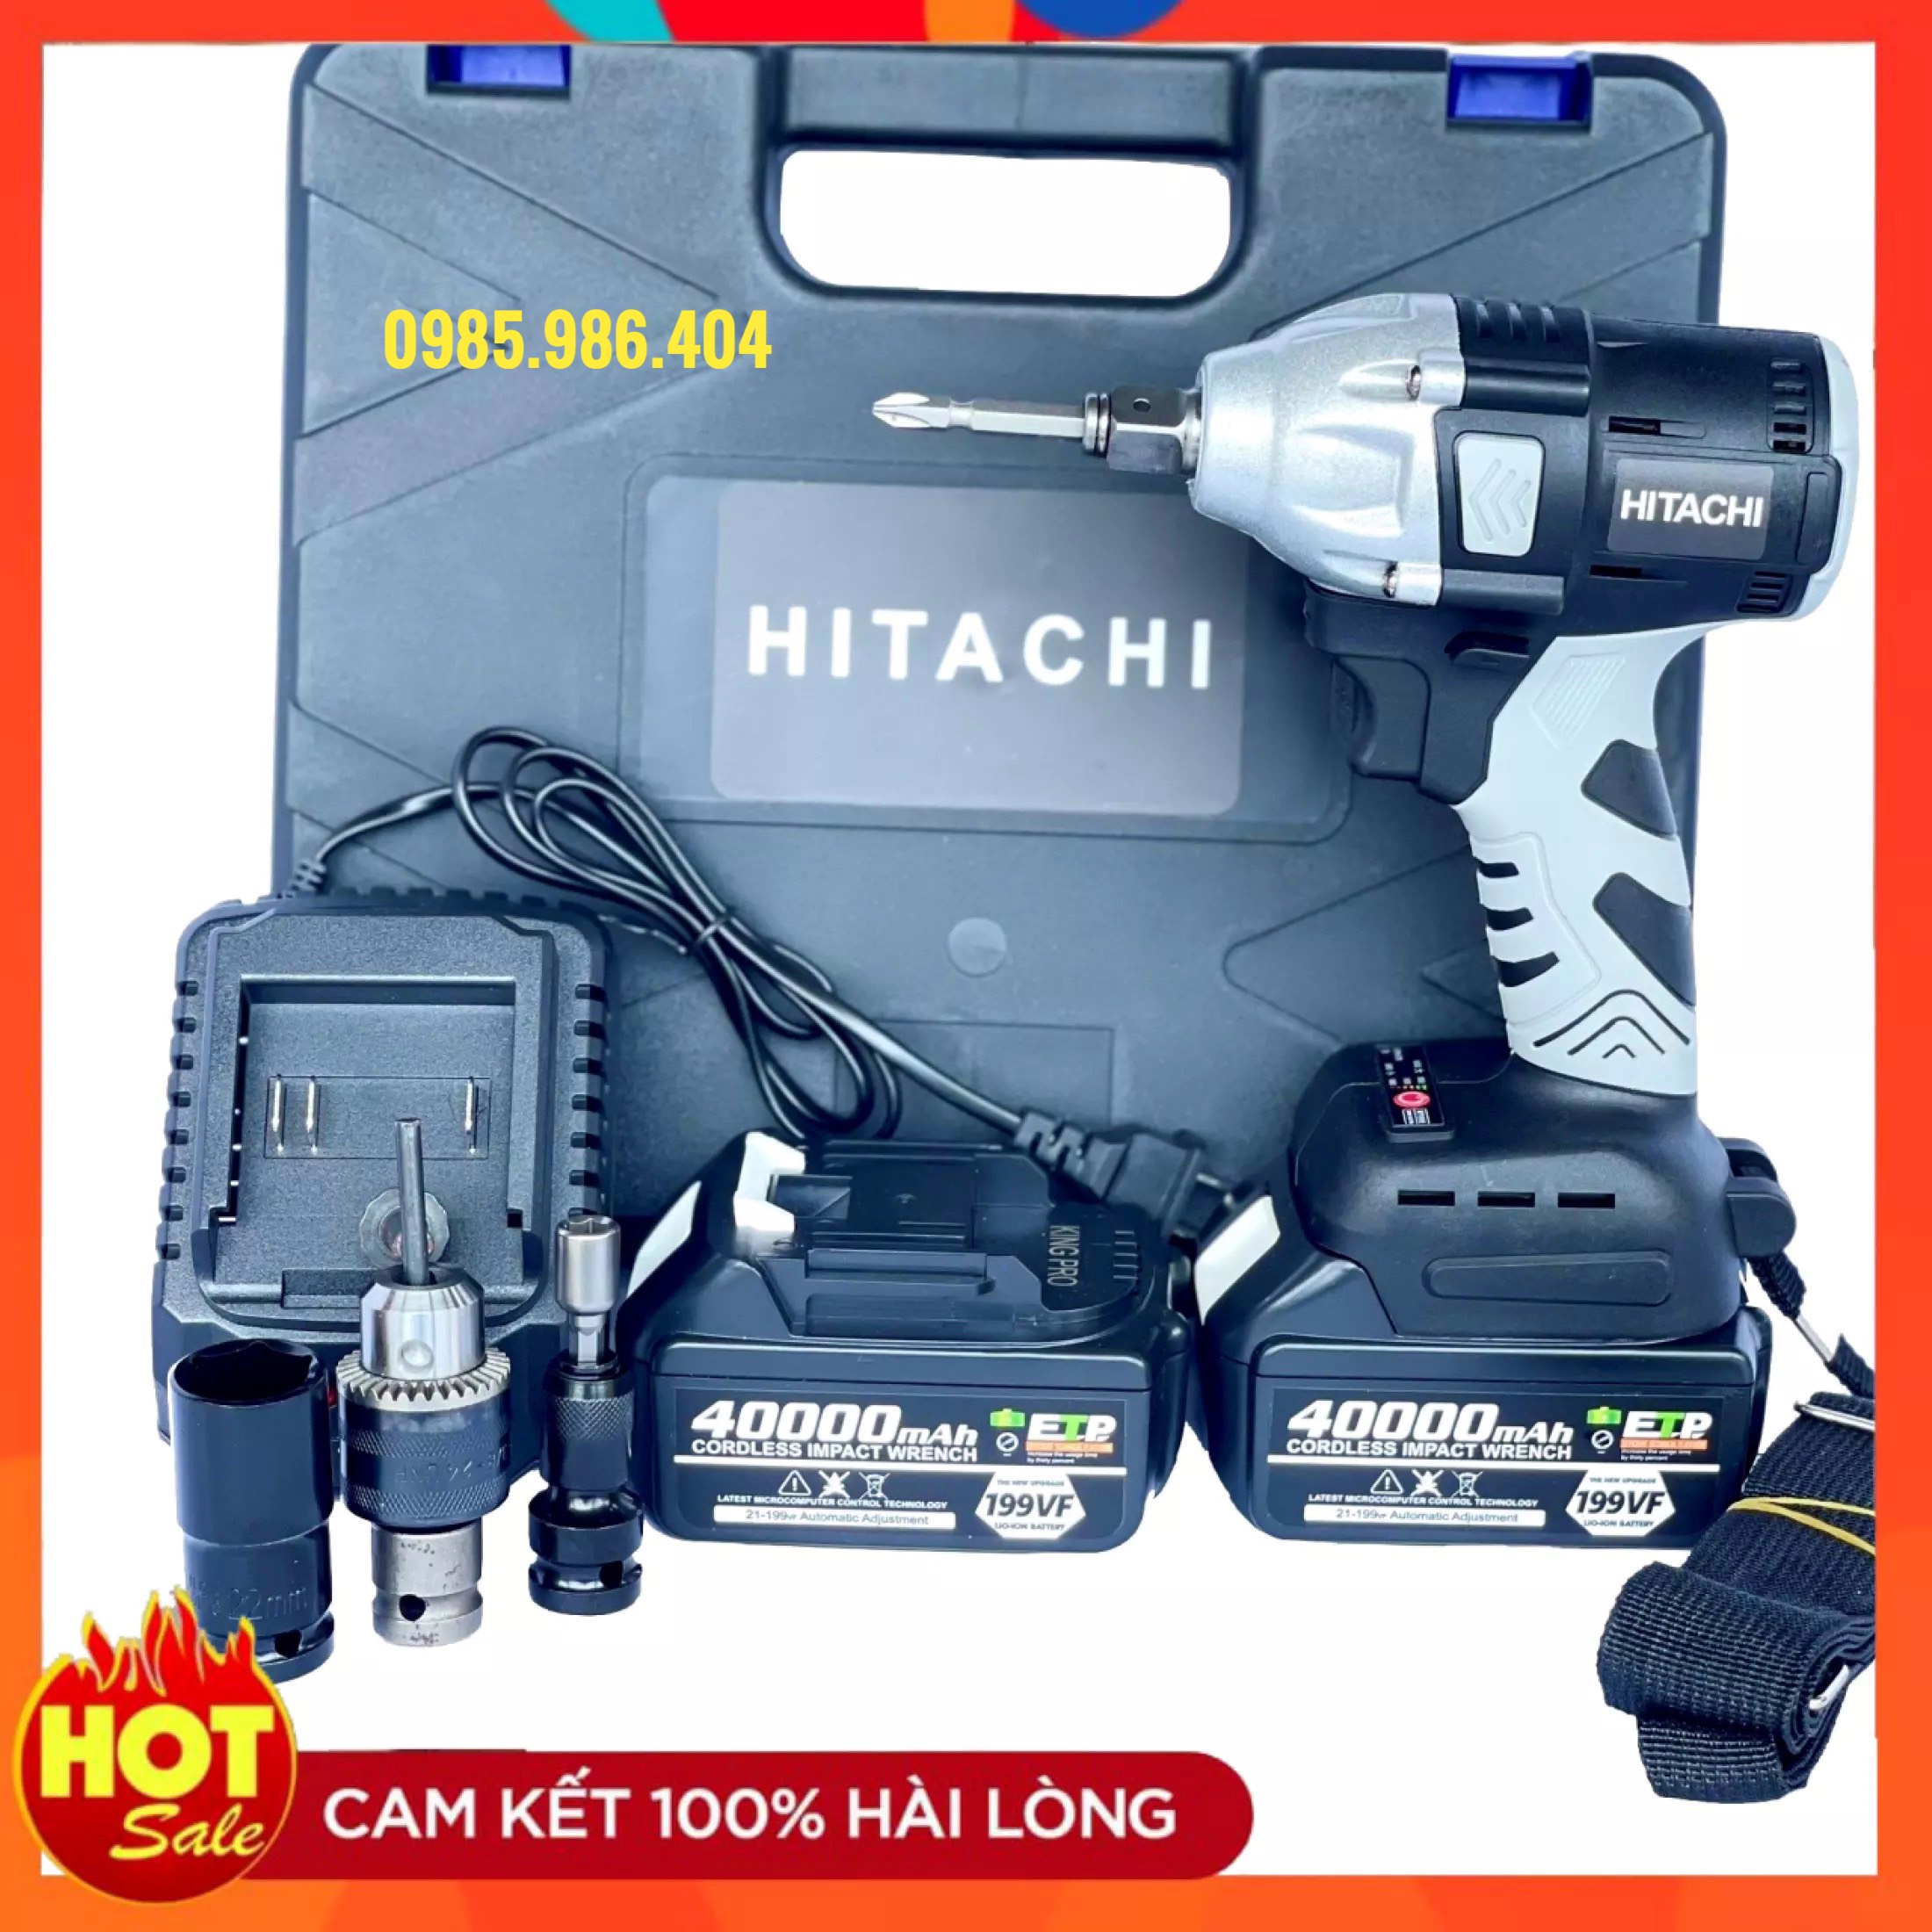 Máy siết bulong Hitachi 199V động cơ không chổi than 3 chức năng khoanbắn vítsiết ốc + Tặng kèm đầu chuyển vít chuyển khoan bắn tôn